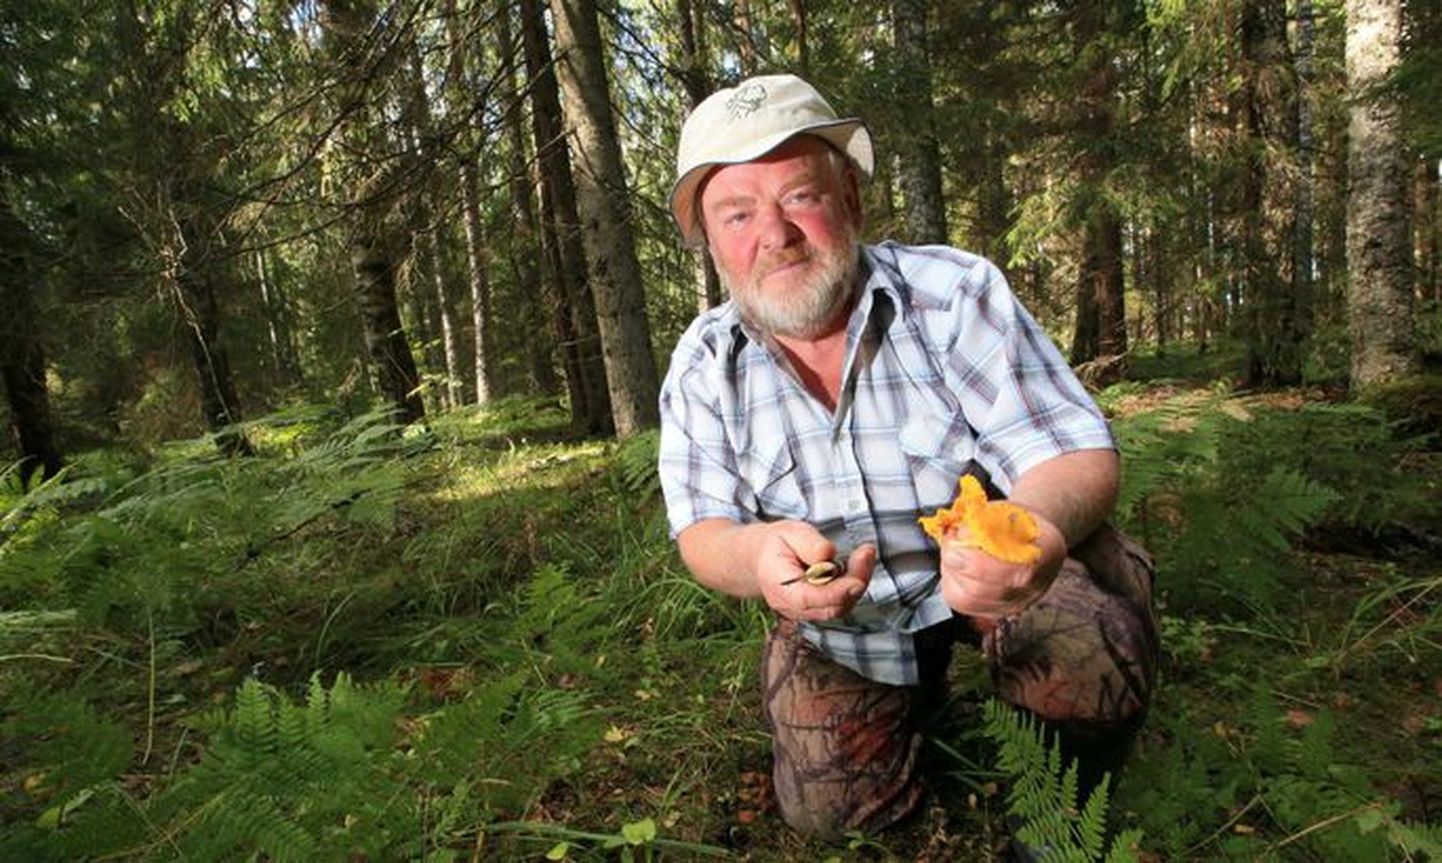 Натуралист и руководитель походов Вахур Сепп больше всего любит ходить за грибами в лес Сыыру. Больший урожай грибов он предсказывает на конец августа.